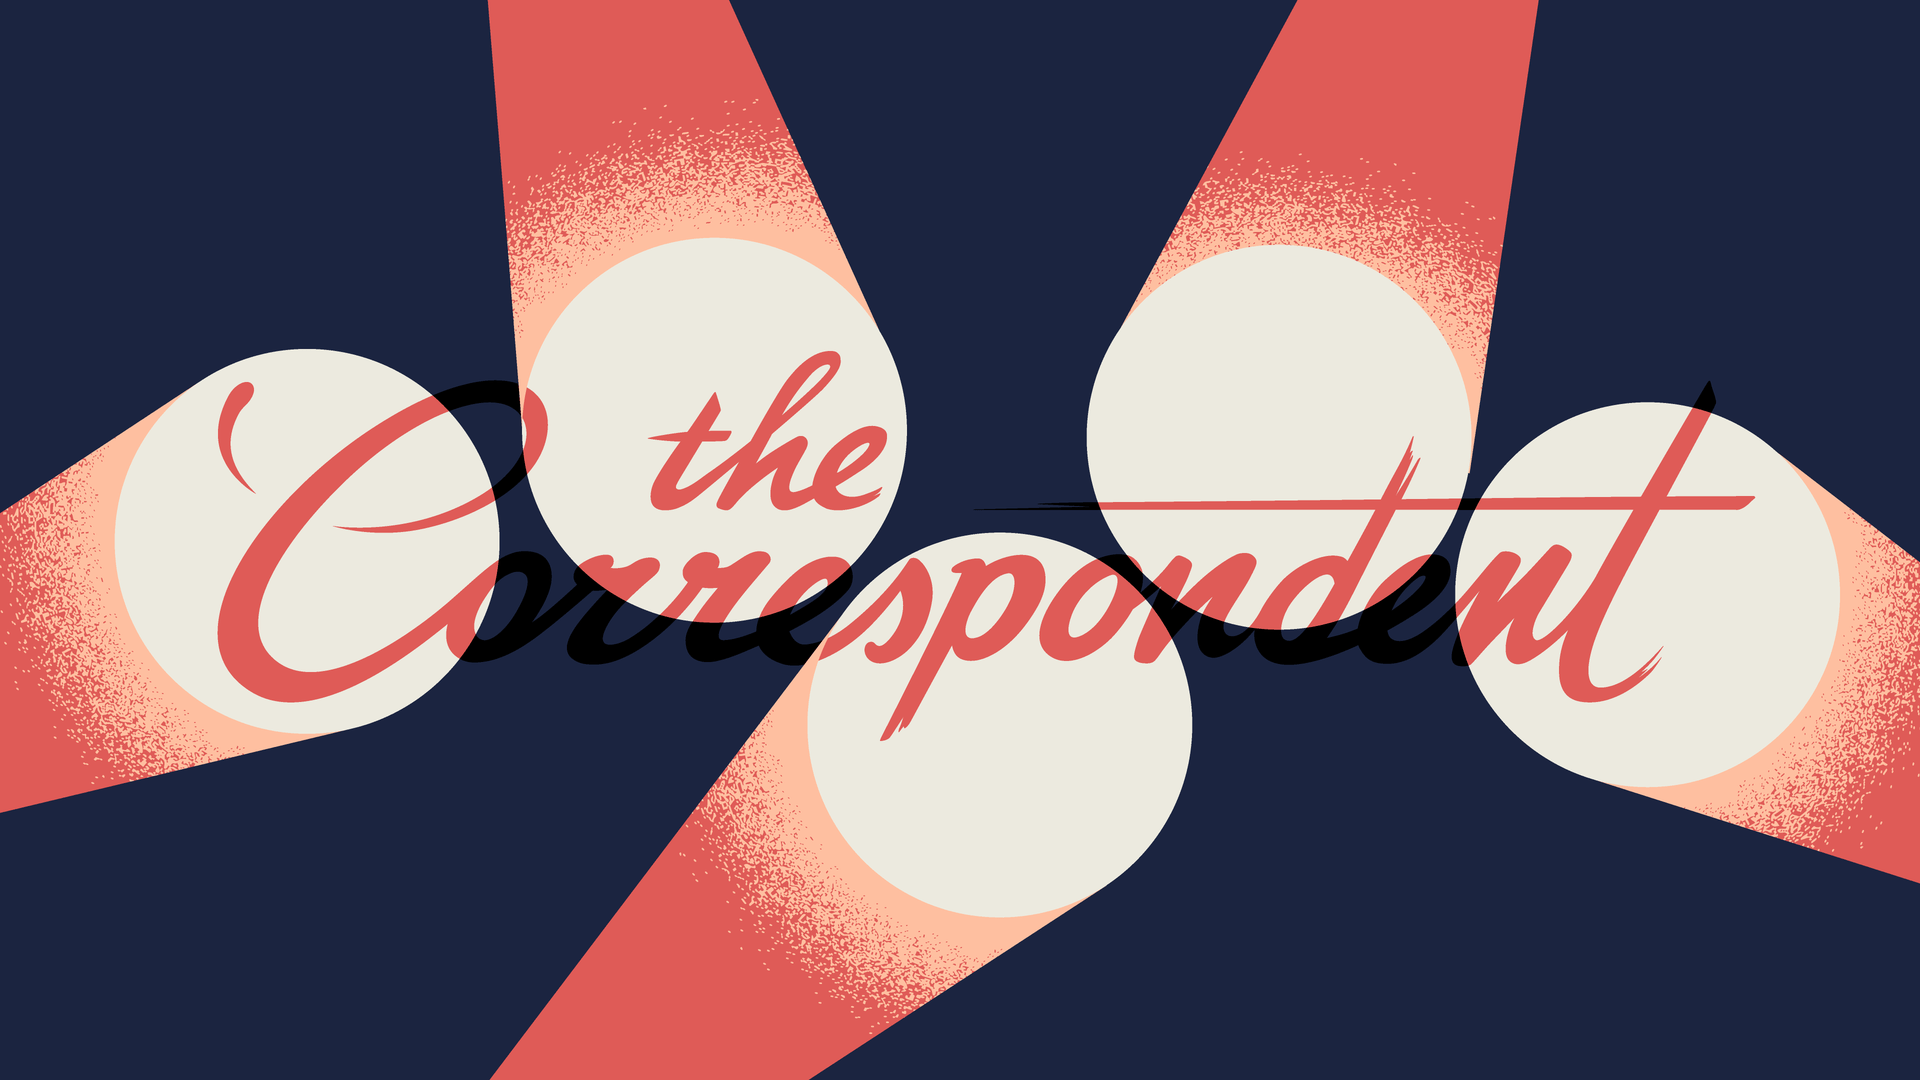 Een illustratie van het logo van The Correspondent met vijf spotlights erop